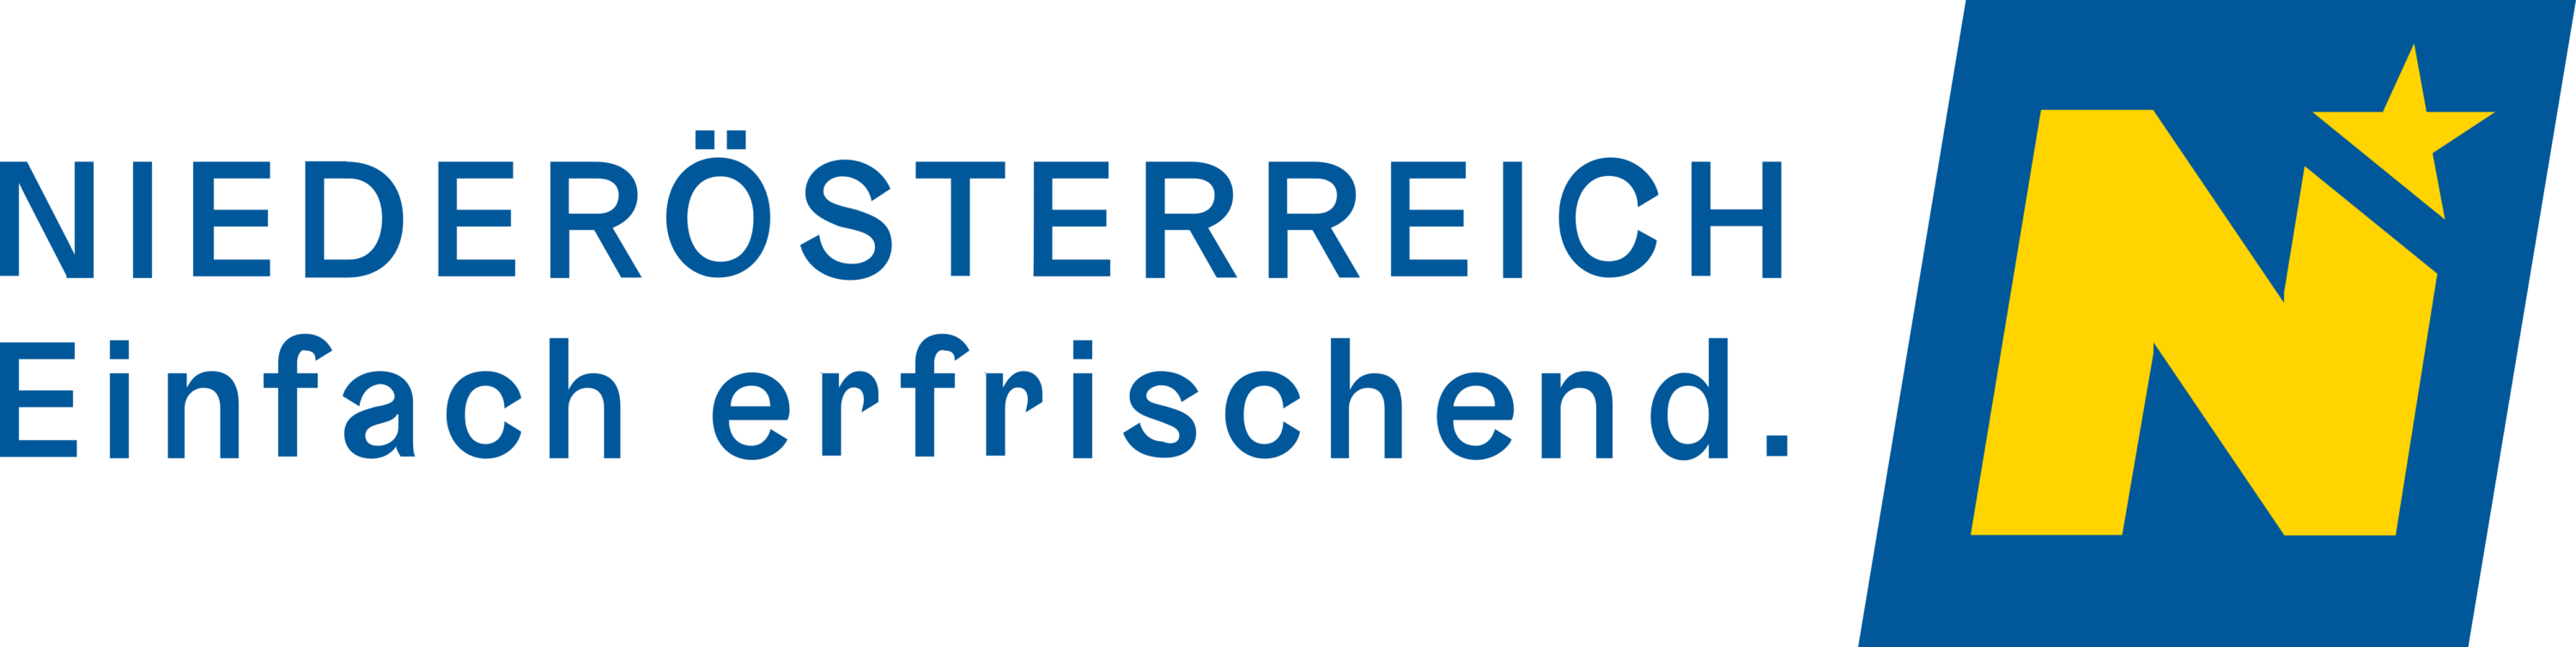 Niederosterreich Werbung GmbH Logo